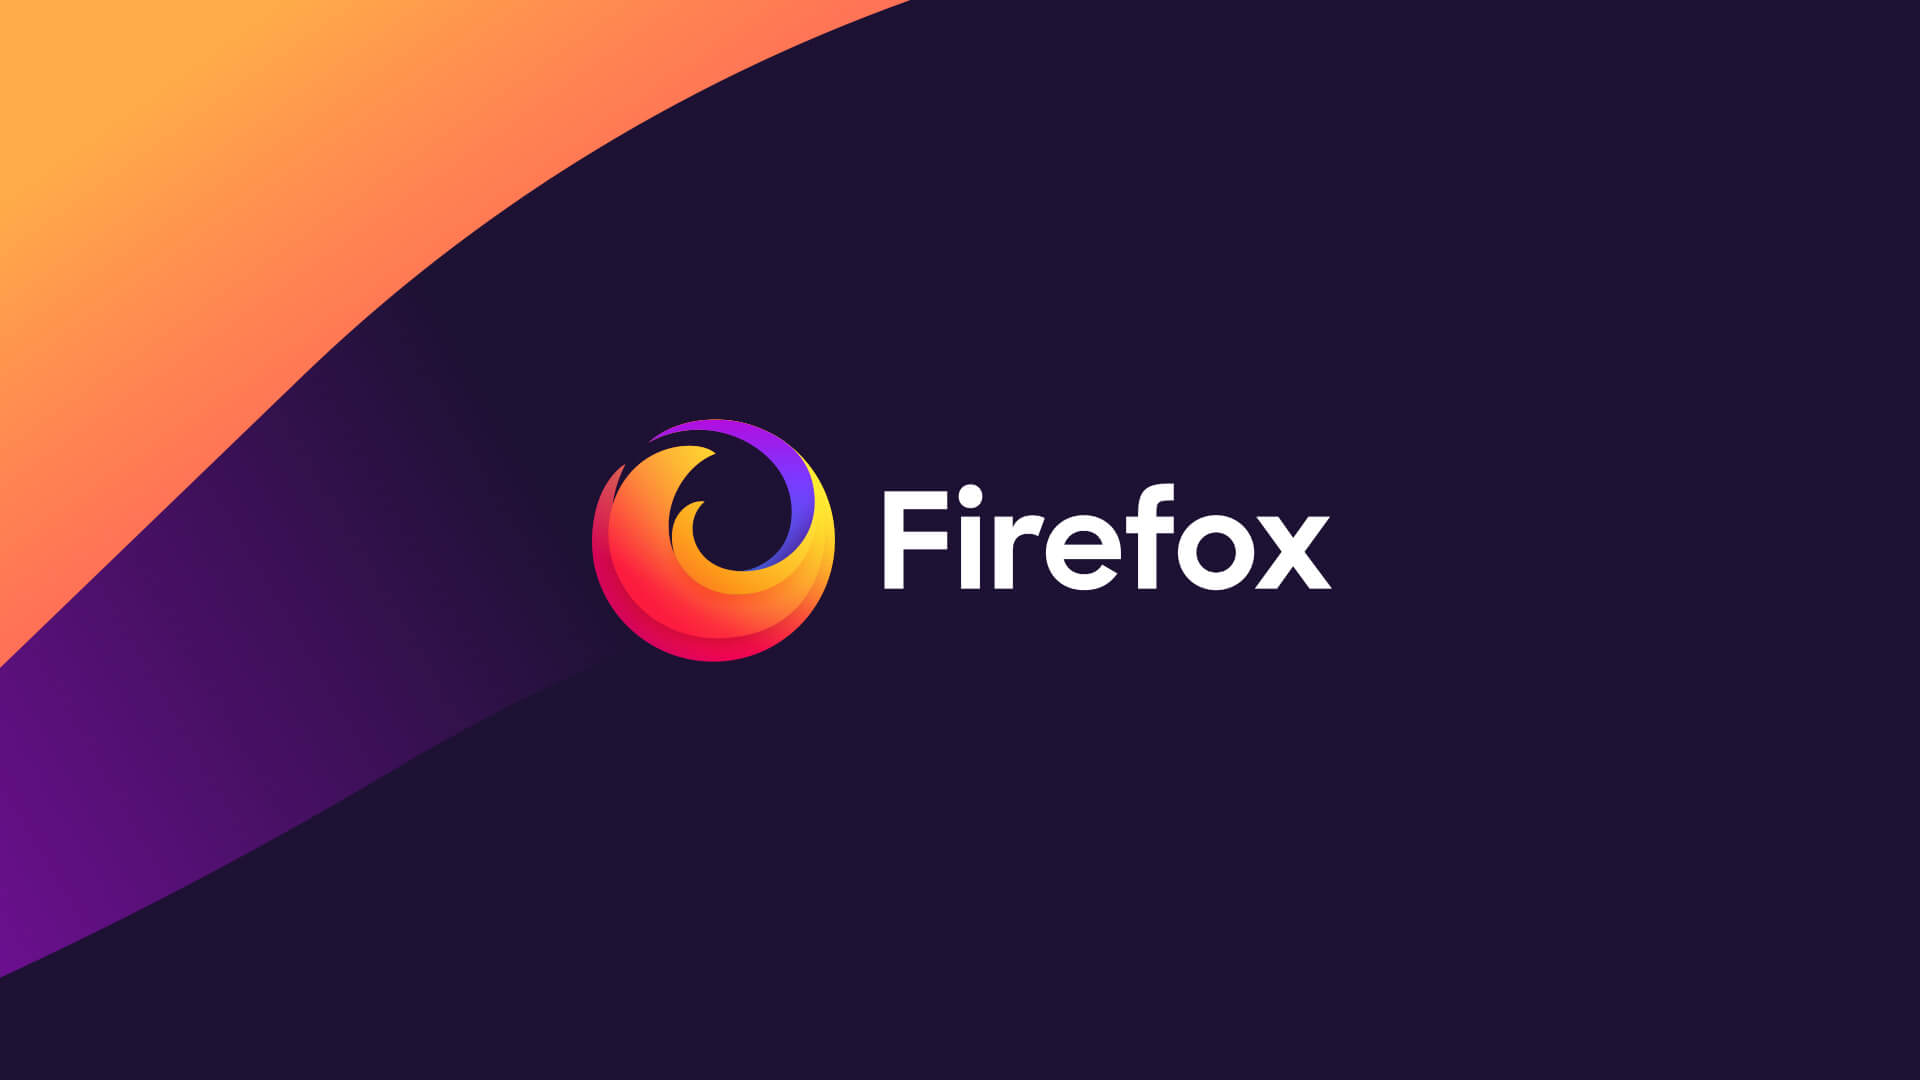 Mozilla Firefox desteği kapanan sistemler